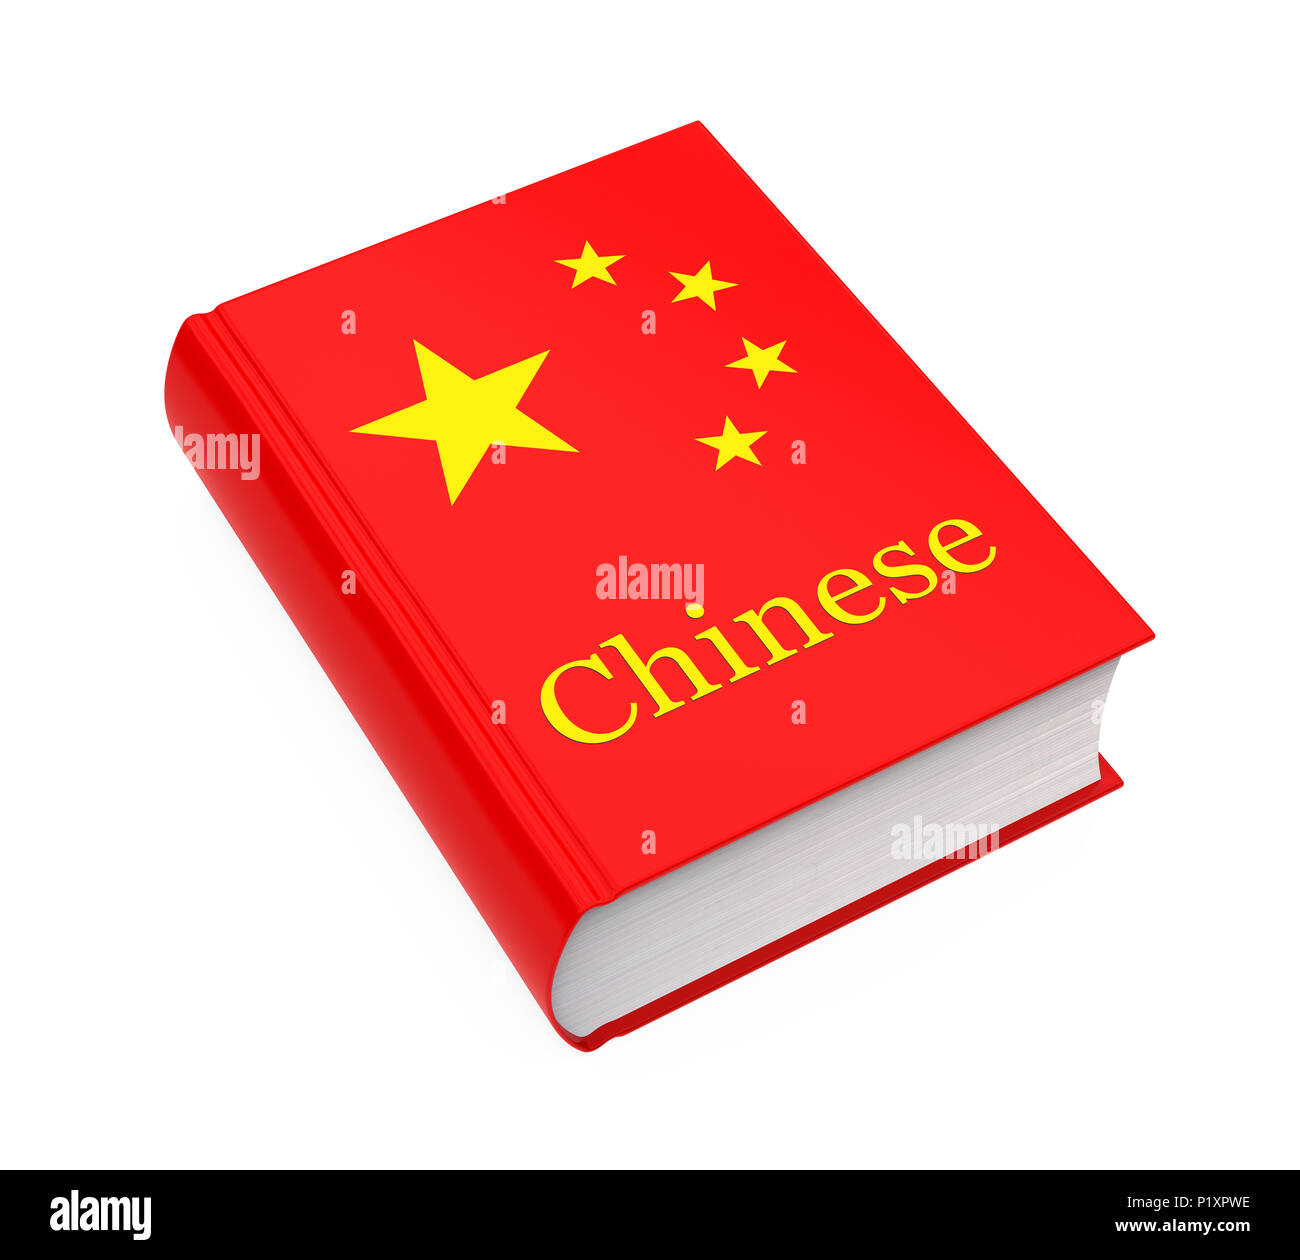 Chinesisch Wörterbuch Buch isoliert Stockfoto